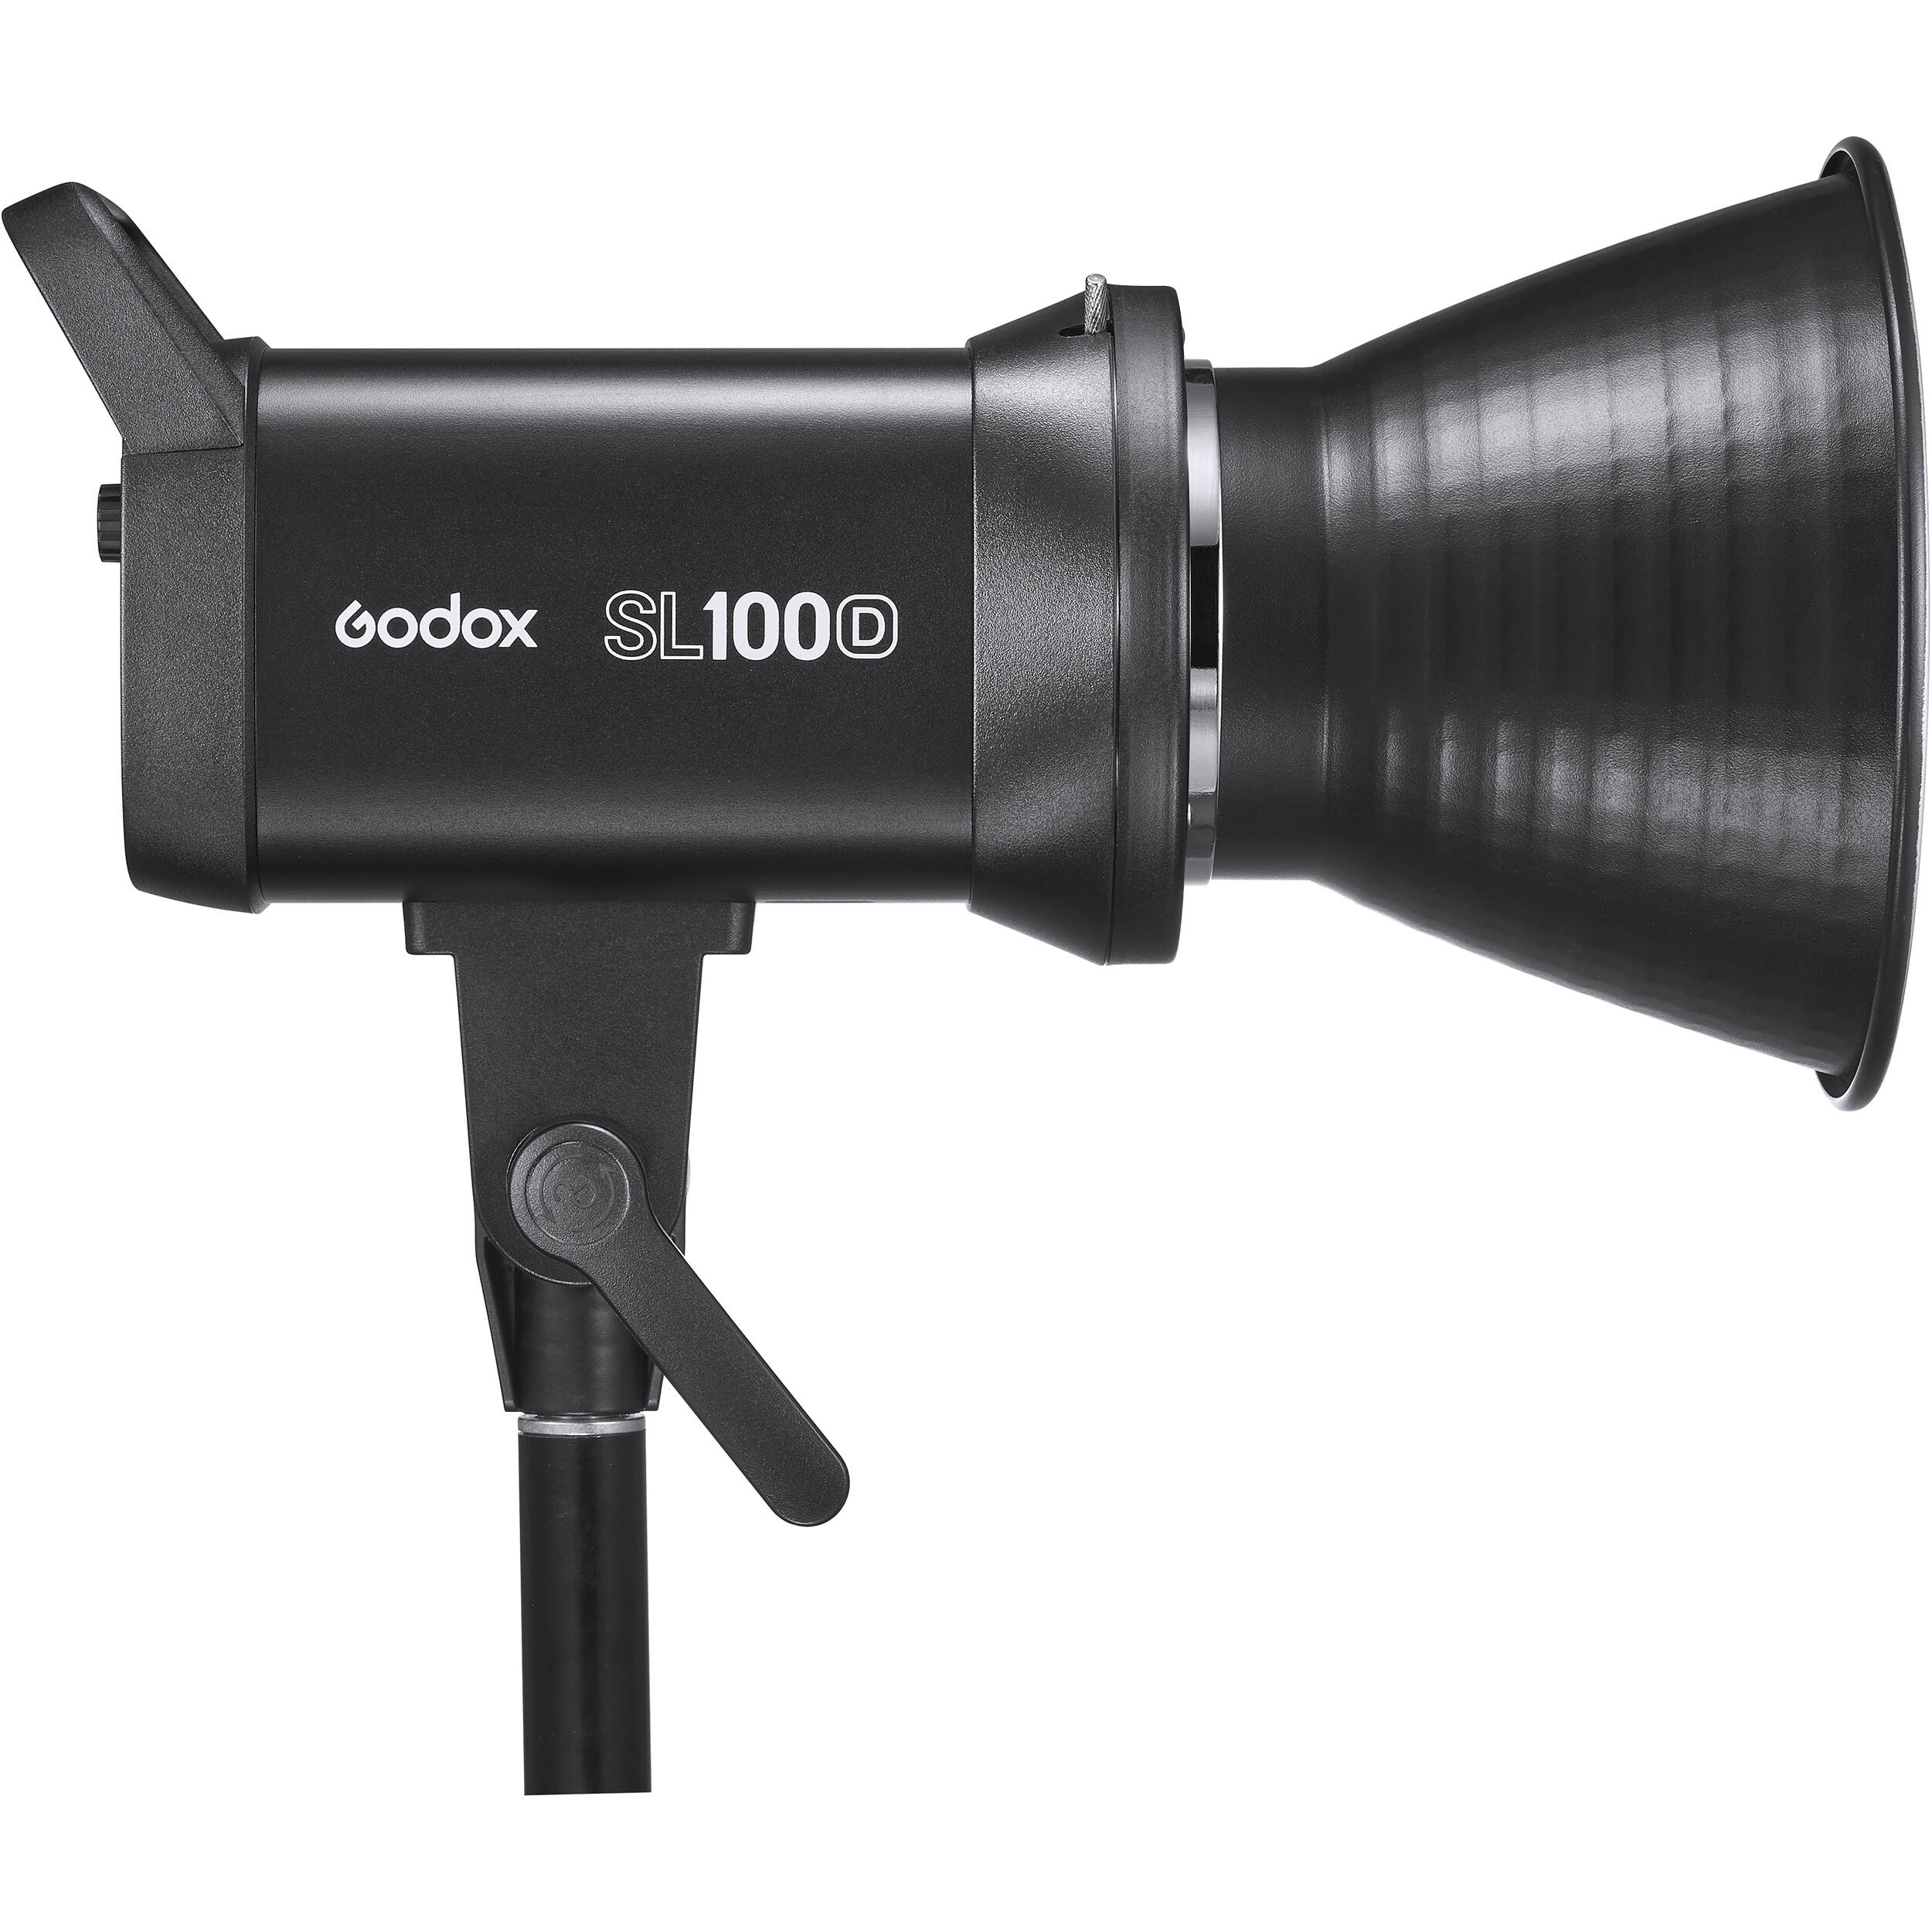     Godox SL100D-K2   Ultra-mart